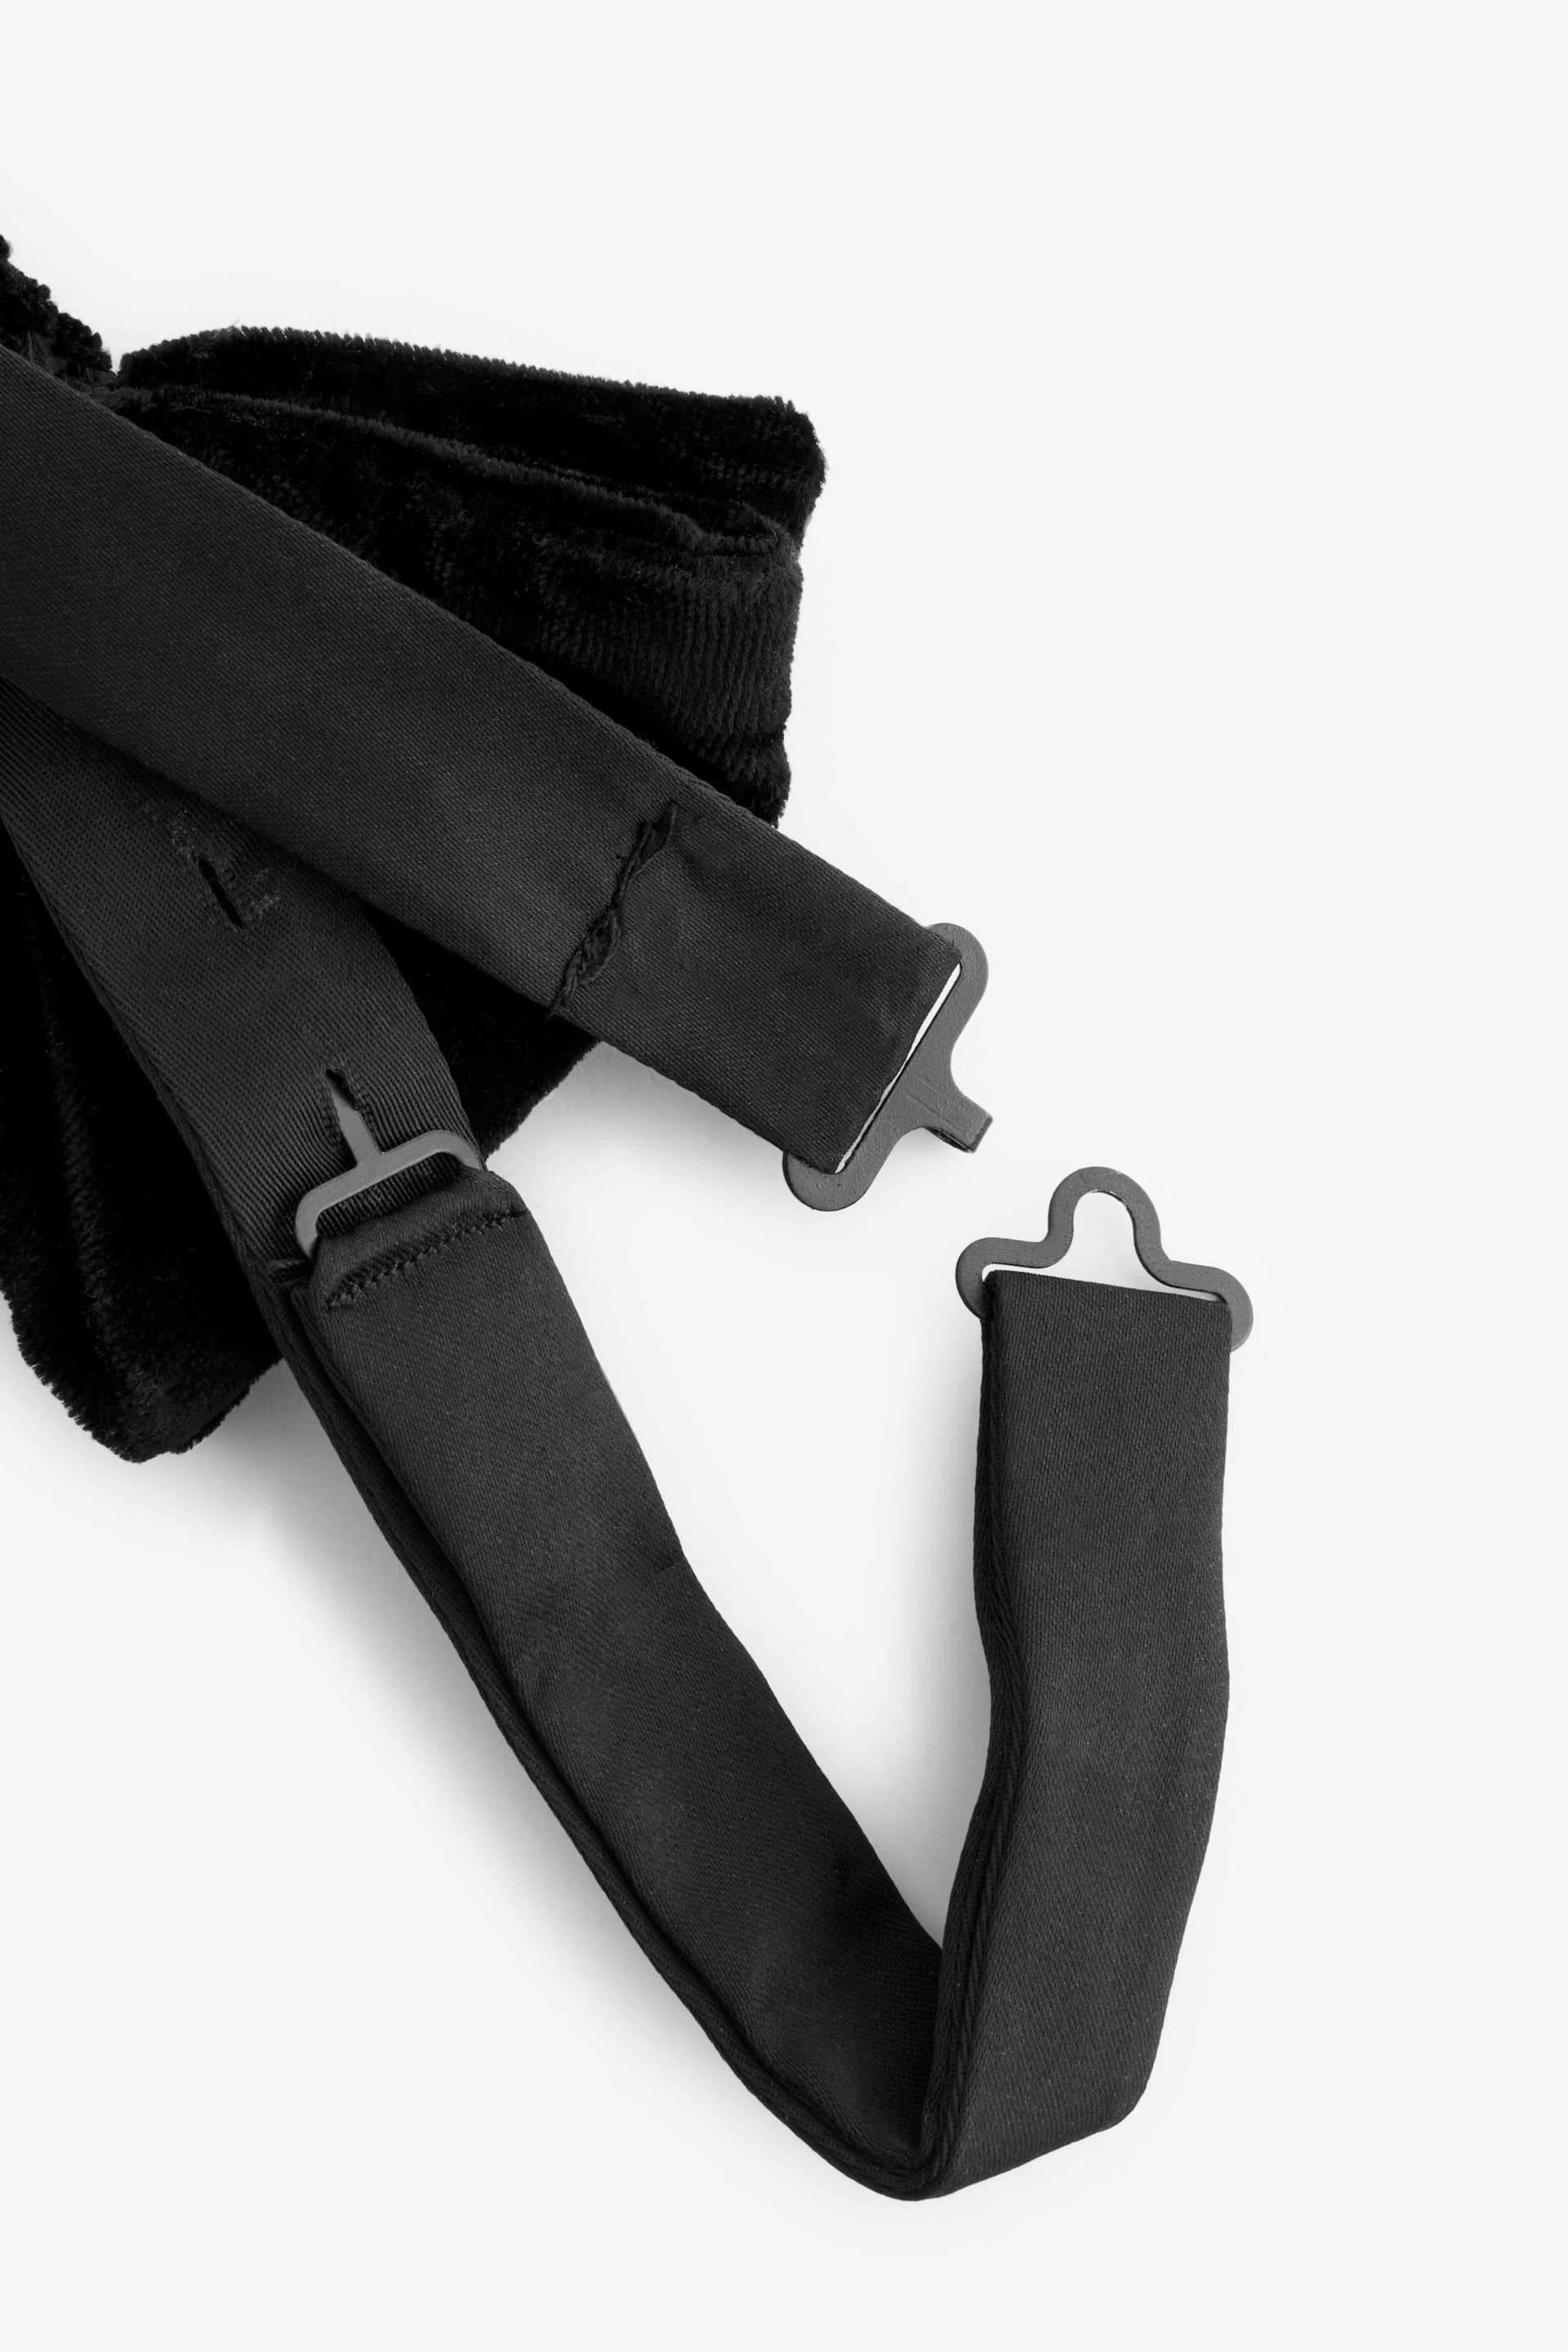 Black Velvet Bow Tie - Image 6 of 6